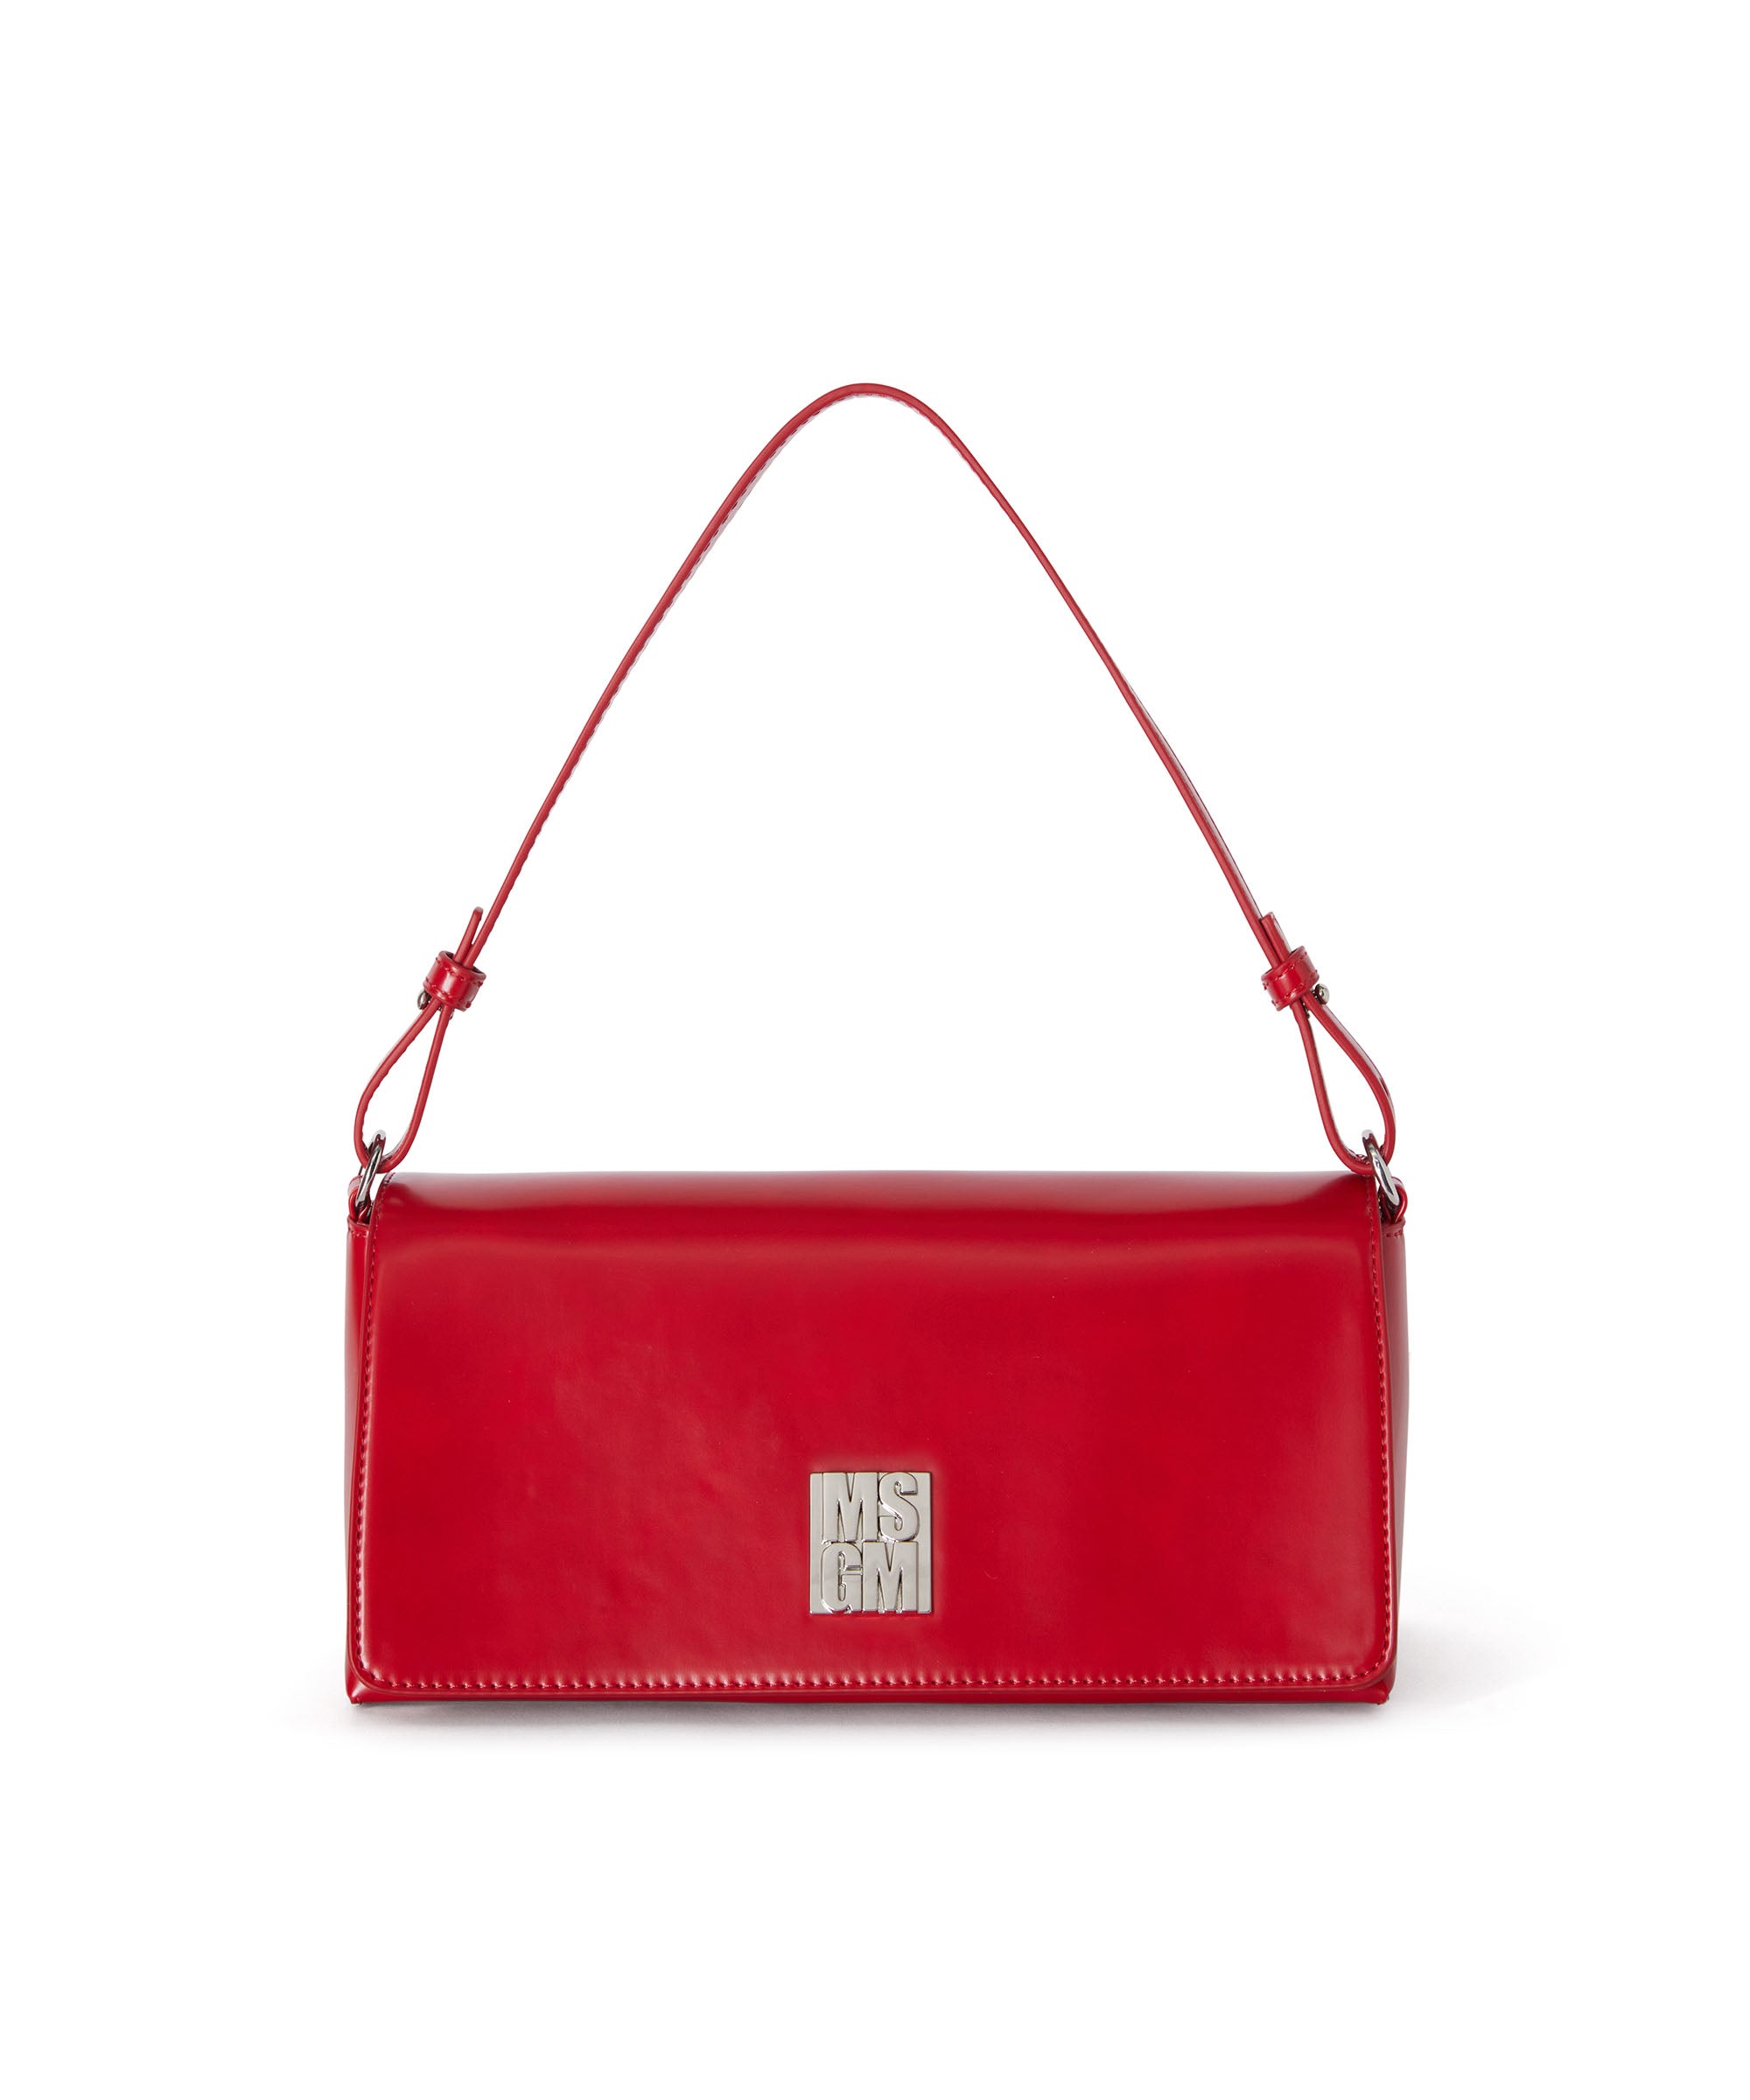 Women's Vintage Brick Red Leather Shoulder Bag